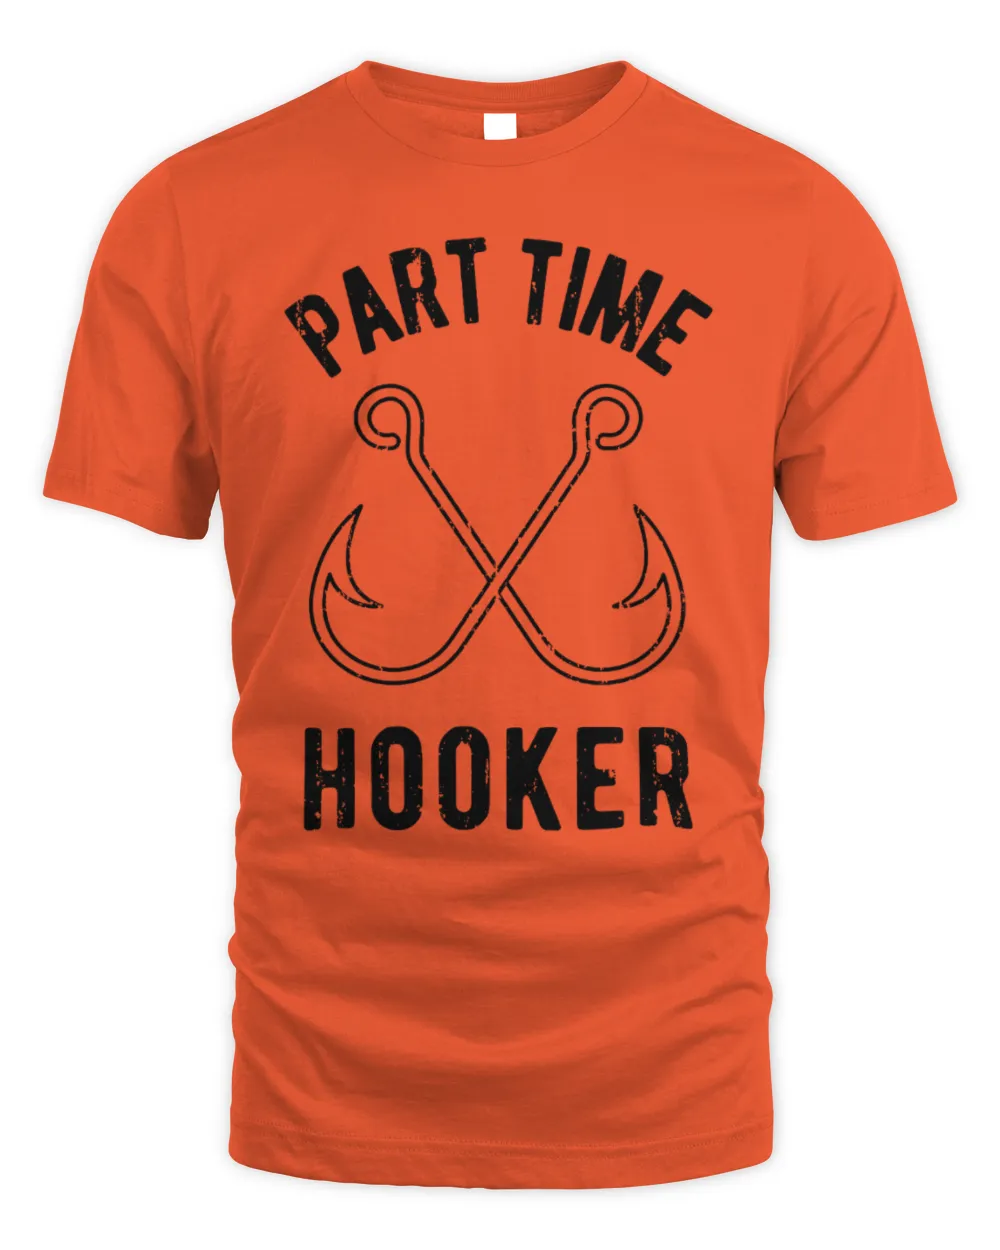 Fishing Gear, Fishing Dad Shirt, Part Time Hooker, Rude Shirt Mens, Funny Fishing Shirt, Bachelor T Shirt, Mens Funny T Shirt